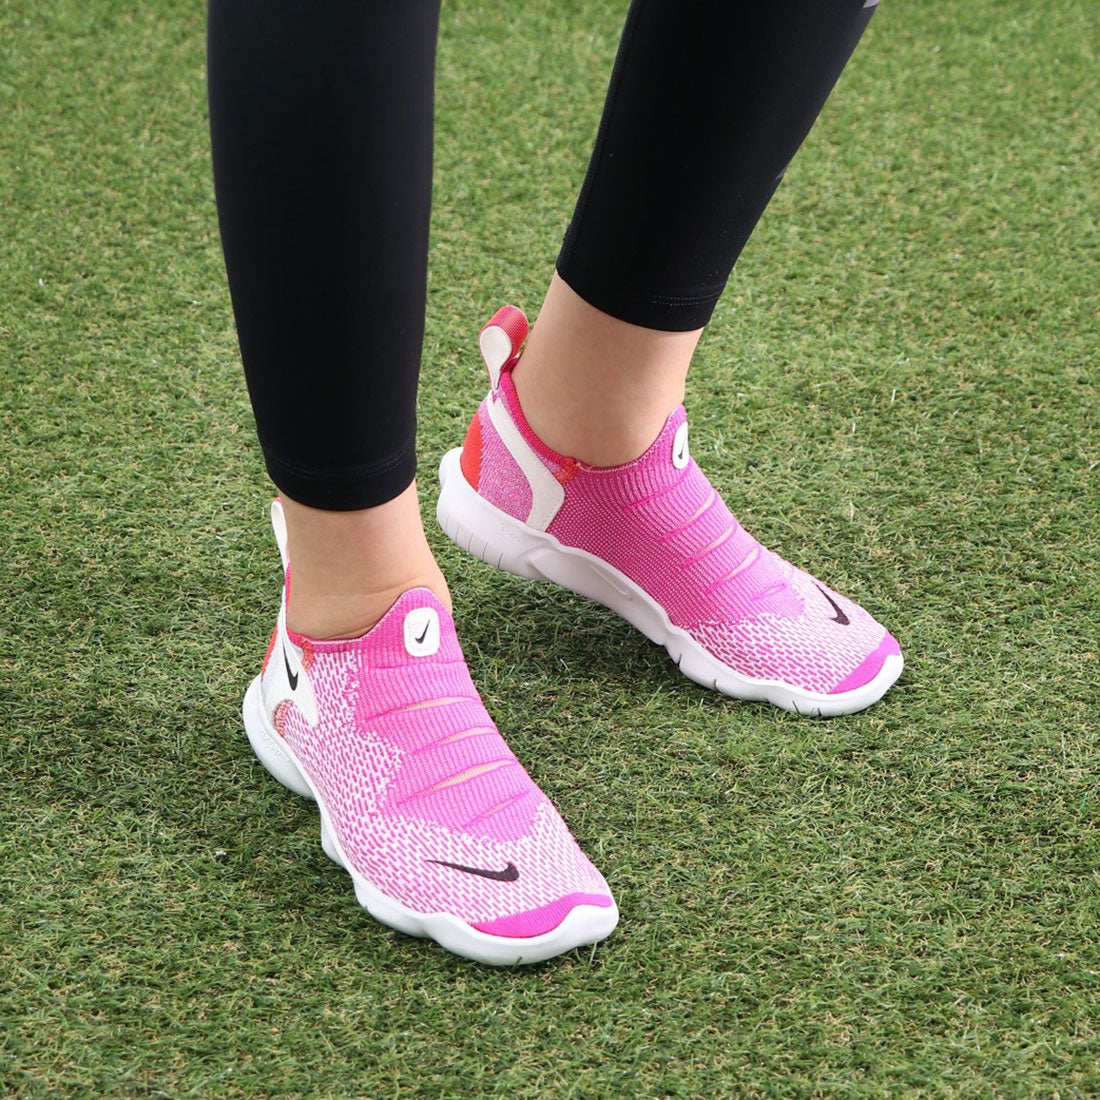 ナイキ Nike レディース 陸上 ランニング ランニングシューズ ナイキ ウィメンズ フリー ラン フライニット 3 0 Cj 靴 ファッション通販 ロコンド 自宅で試着 気軽に返品